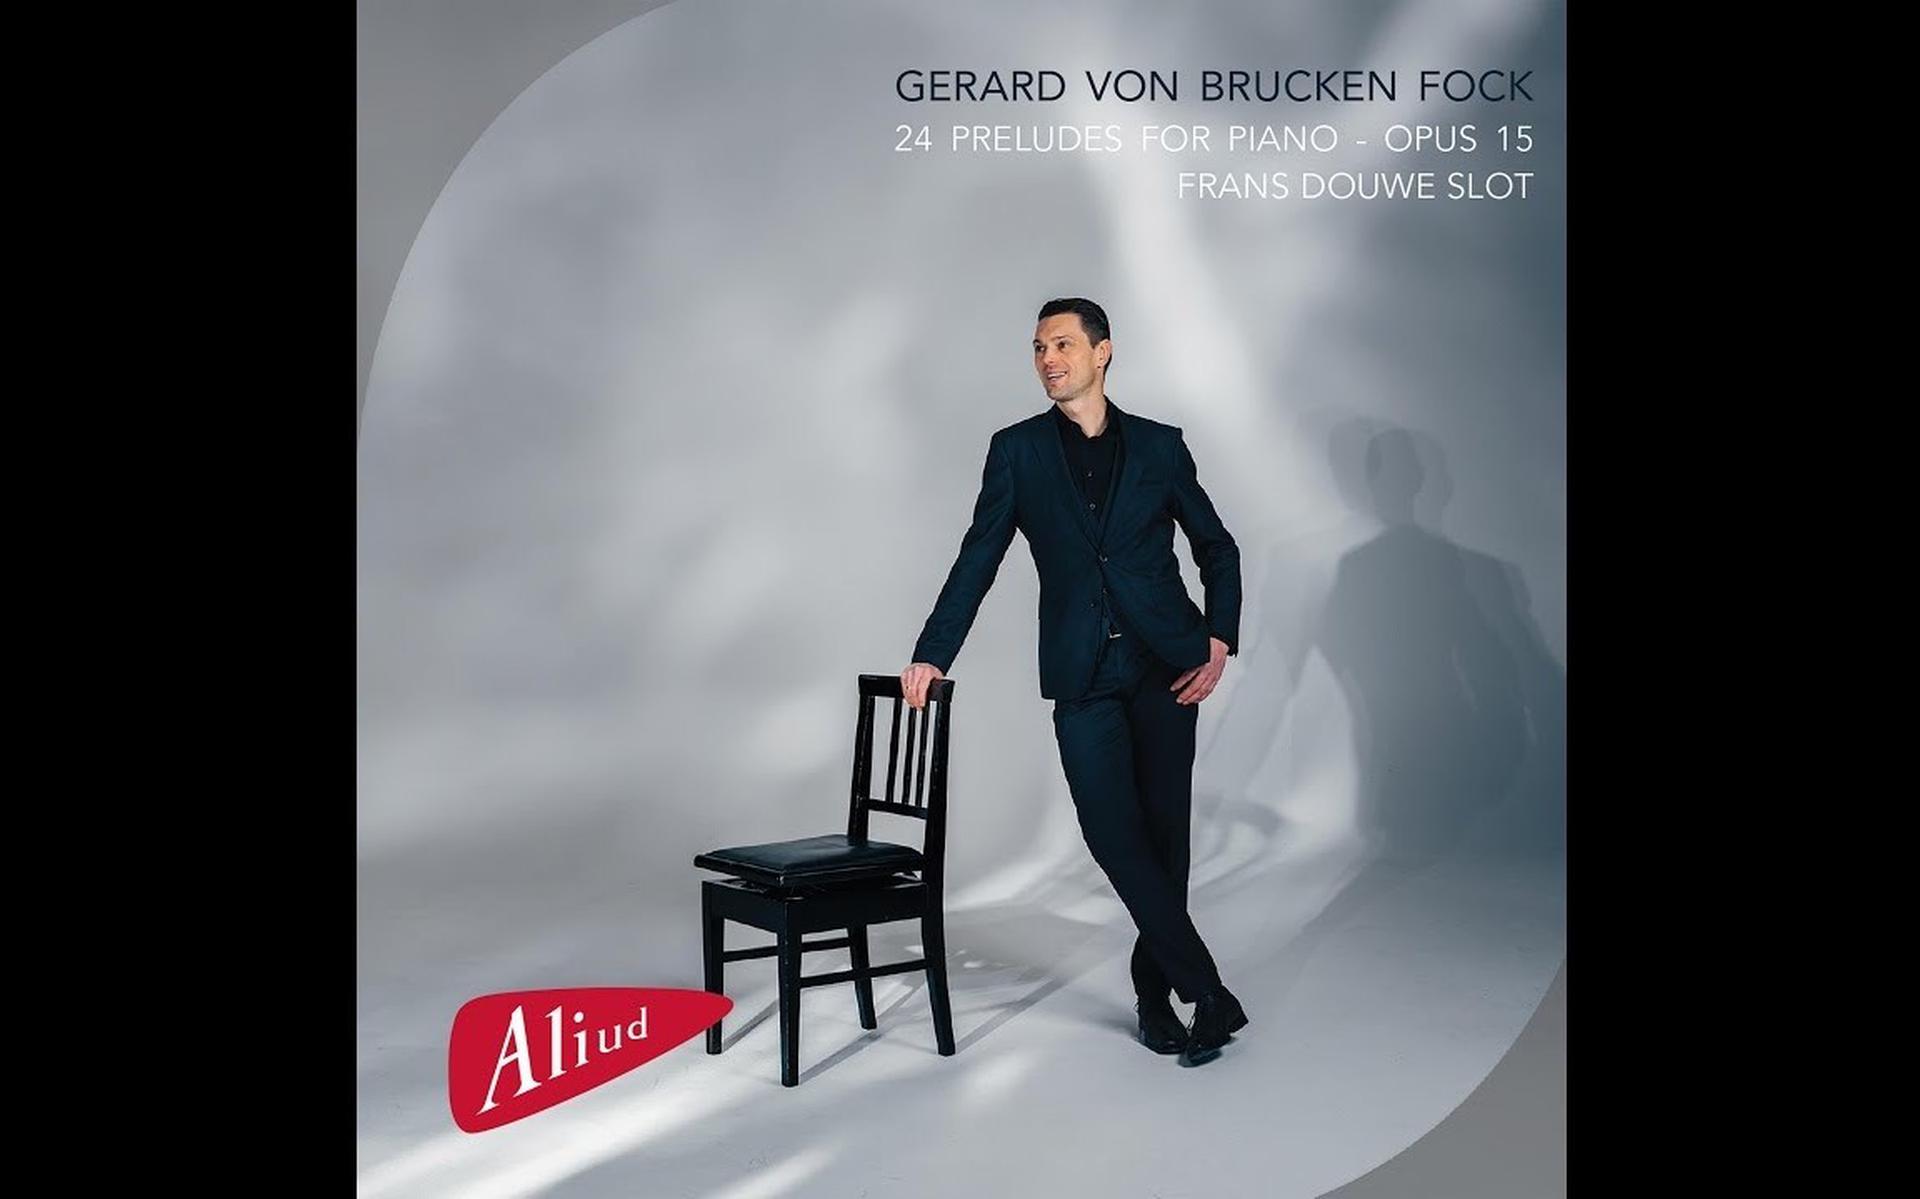 Albumhoes van 'Gerard von Brucken Fock – 24 Preludes voor piano opus 15', door Frans Douwe Slot 
(piano).